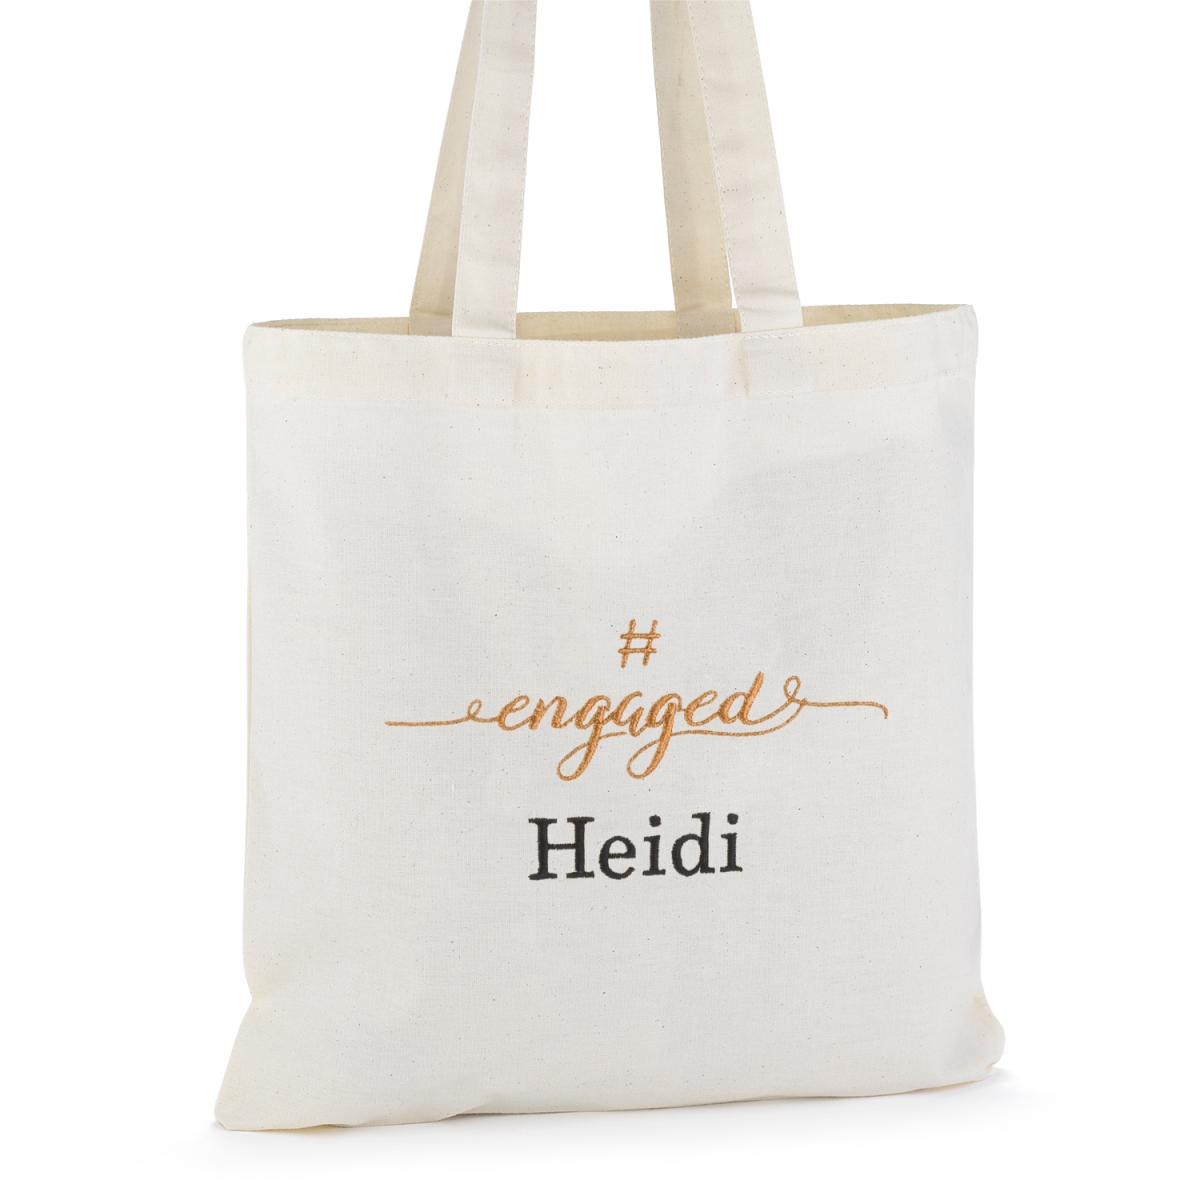 Hortense B. Hewitt 55143p Hashengaged Tote Bag - Personalized